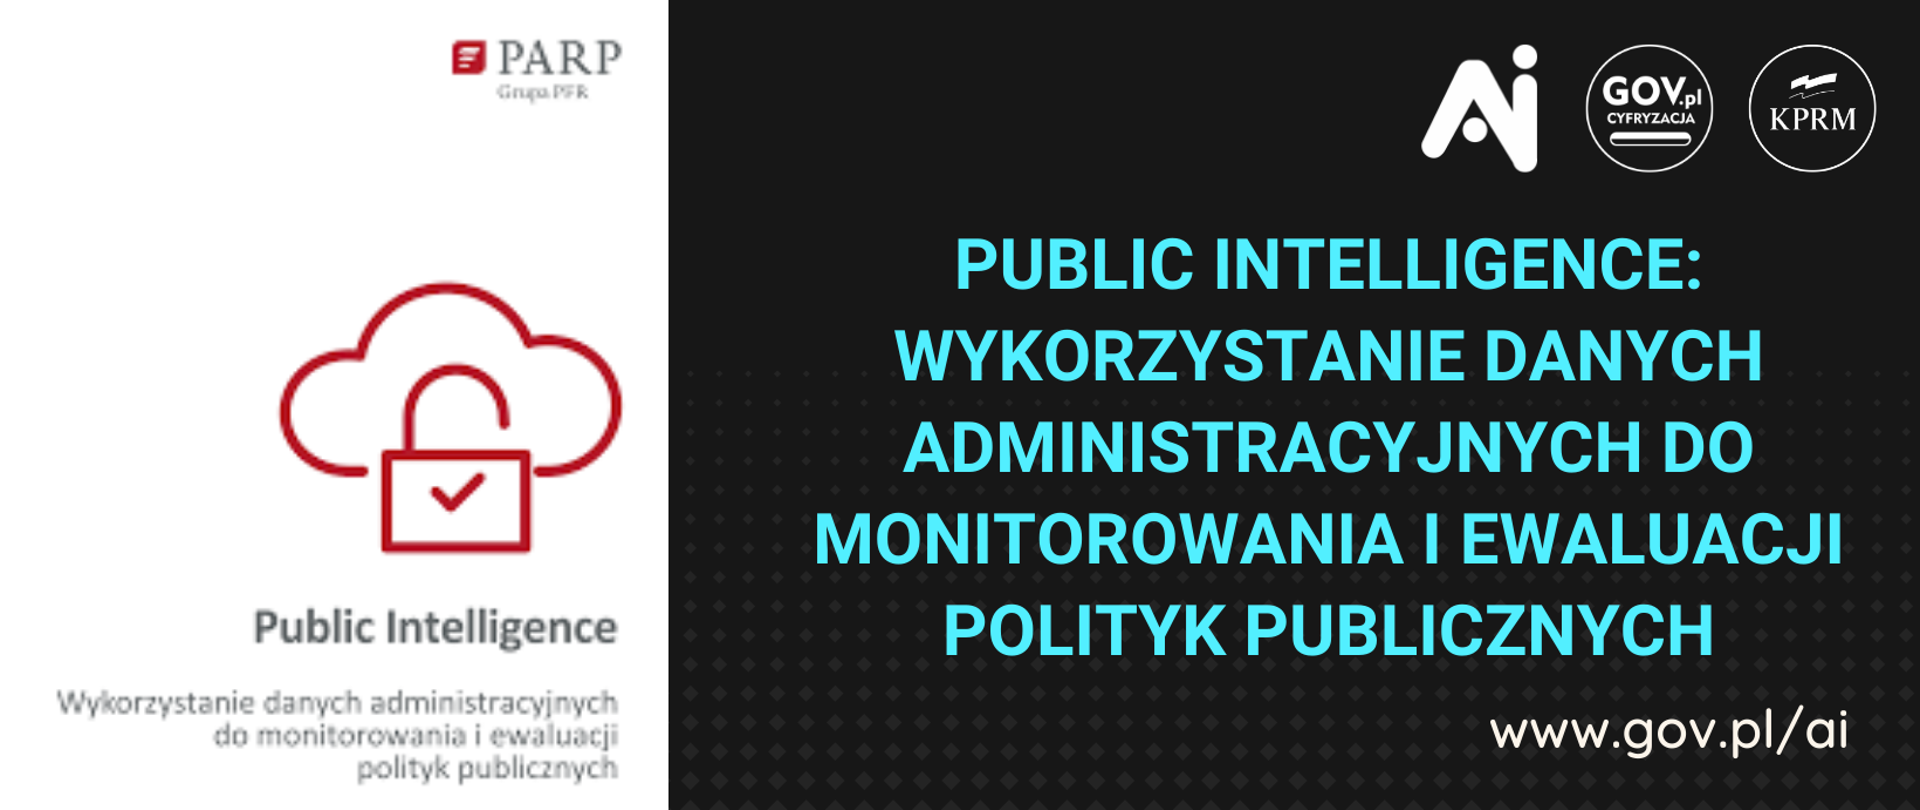 Public Intelligence: Wykorzystanie danych administracyjnych do monitorowania i ewaluacji polityk publicznych